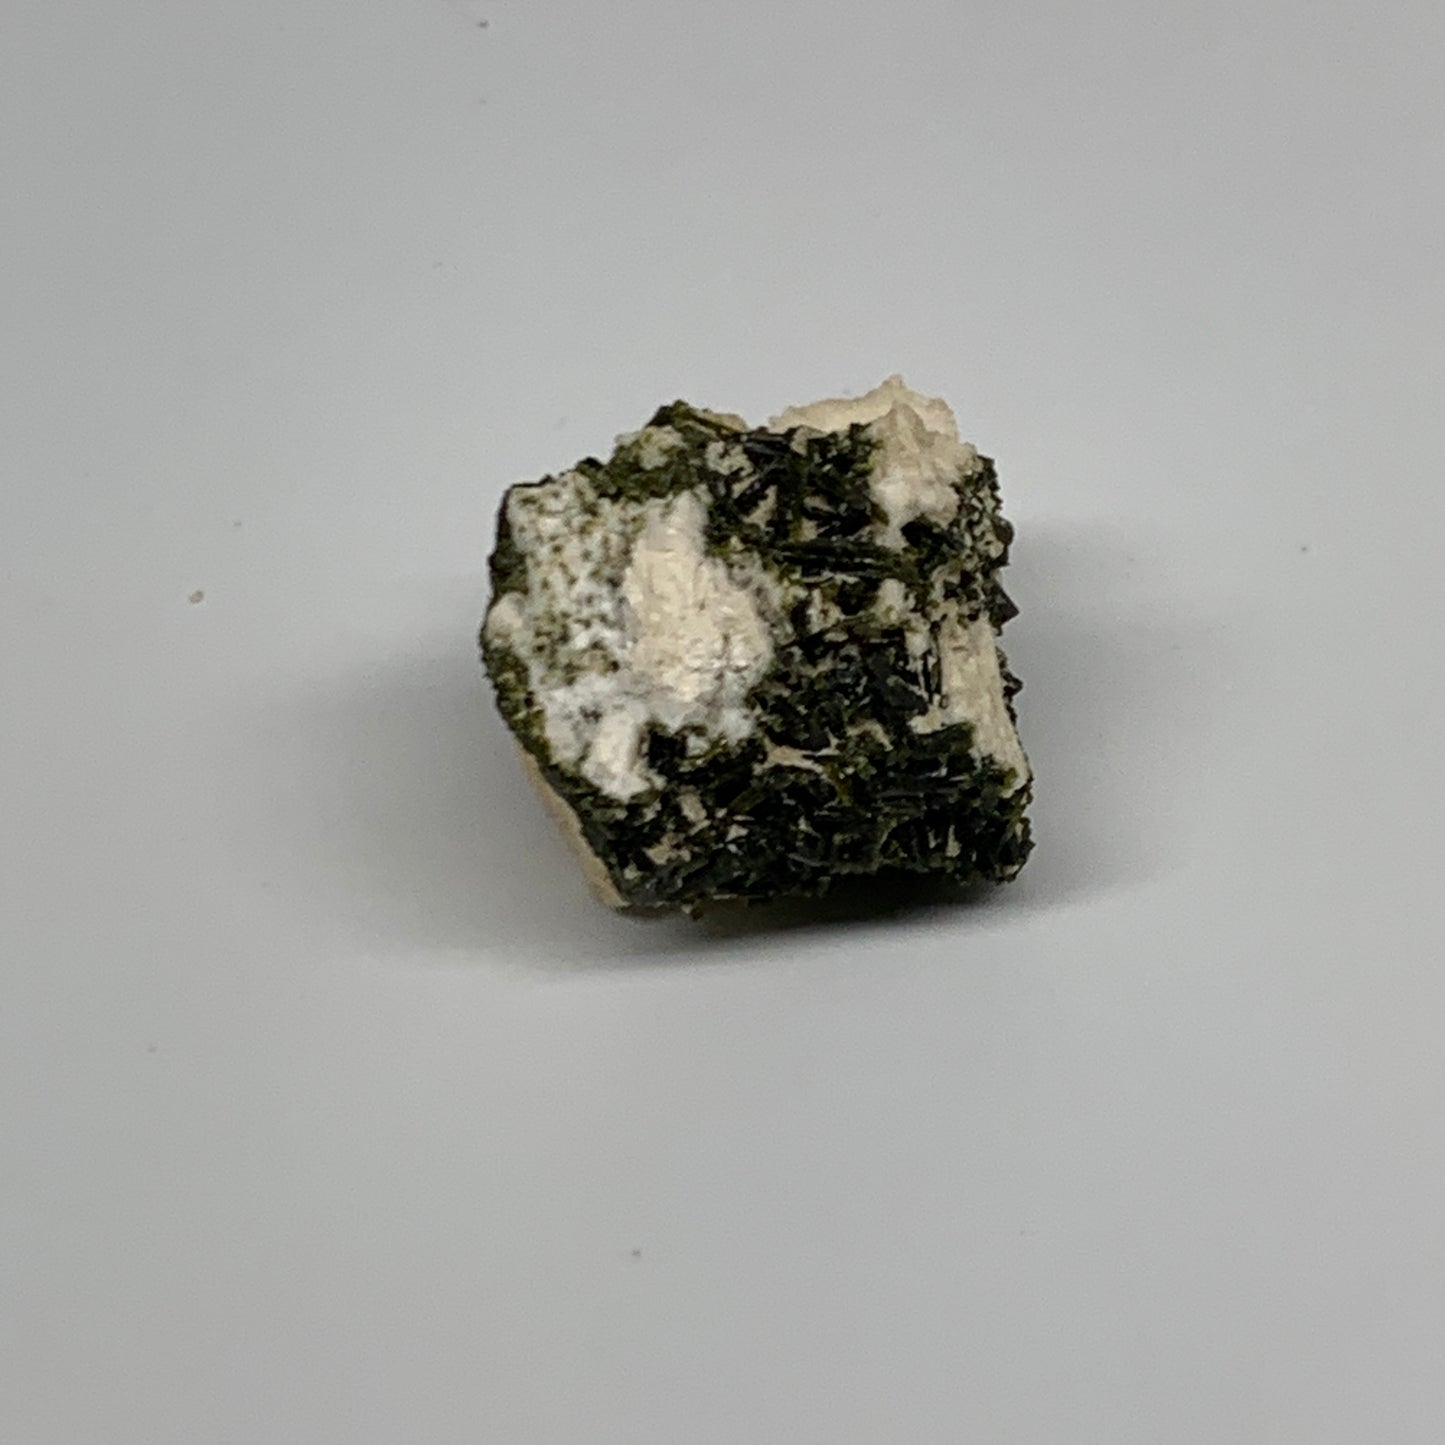 35.2g,1.2"x1.2"x1.1",Green Epidote Custer/Leaf Mineral Specimen @Pakistan,B27581